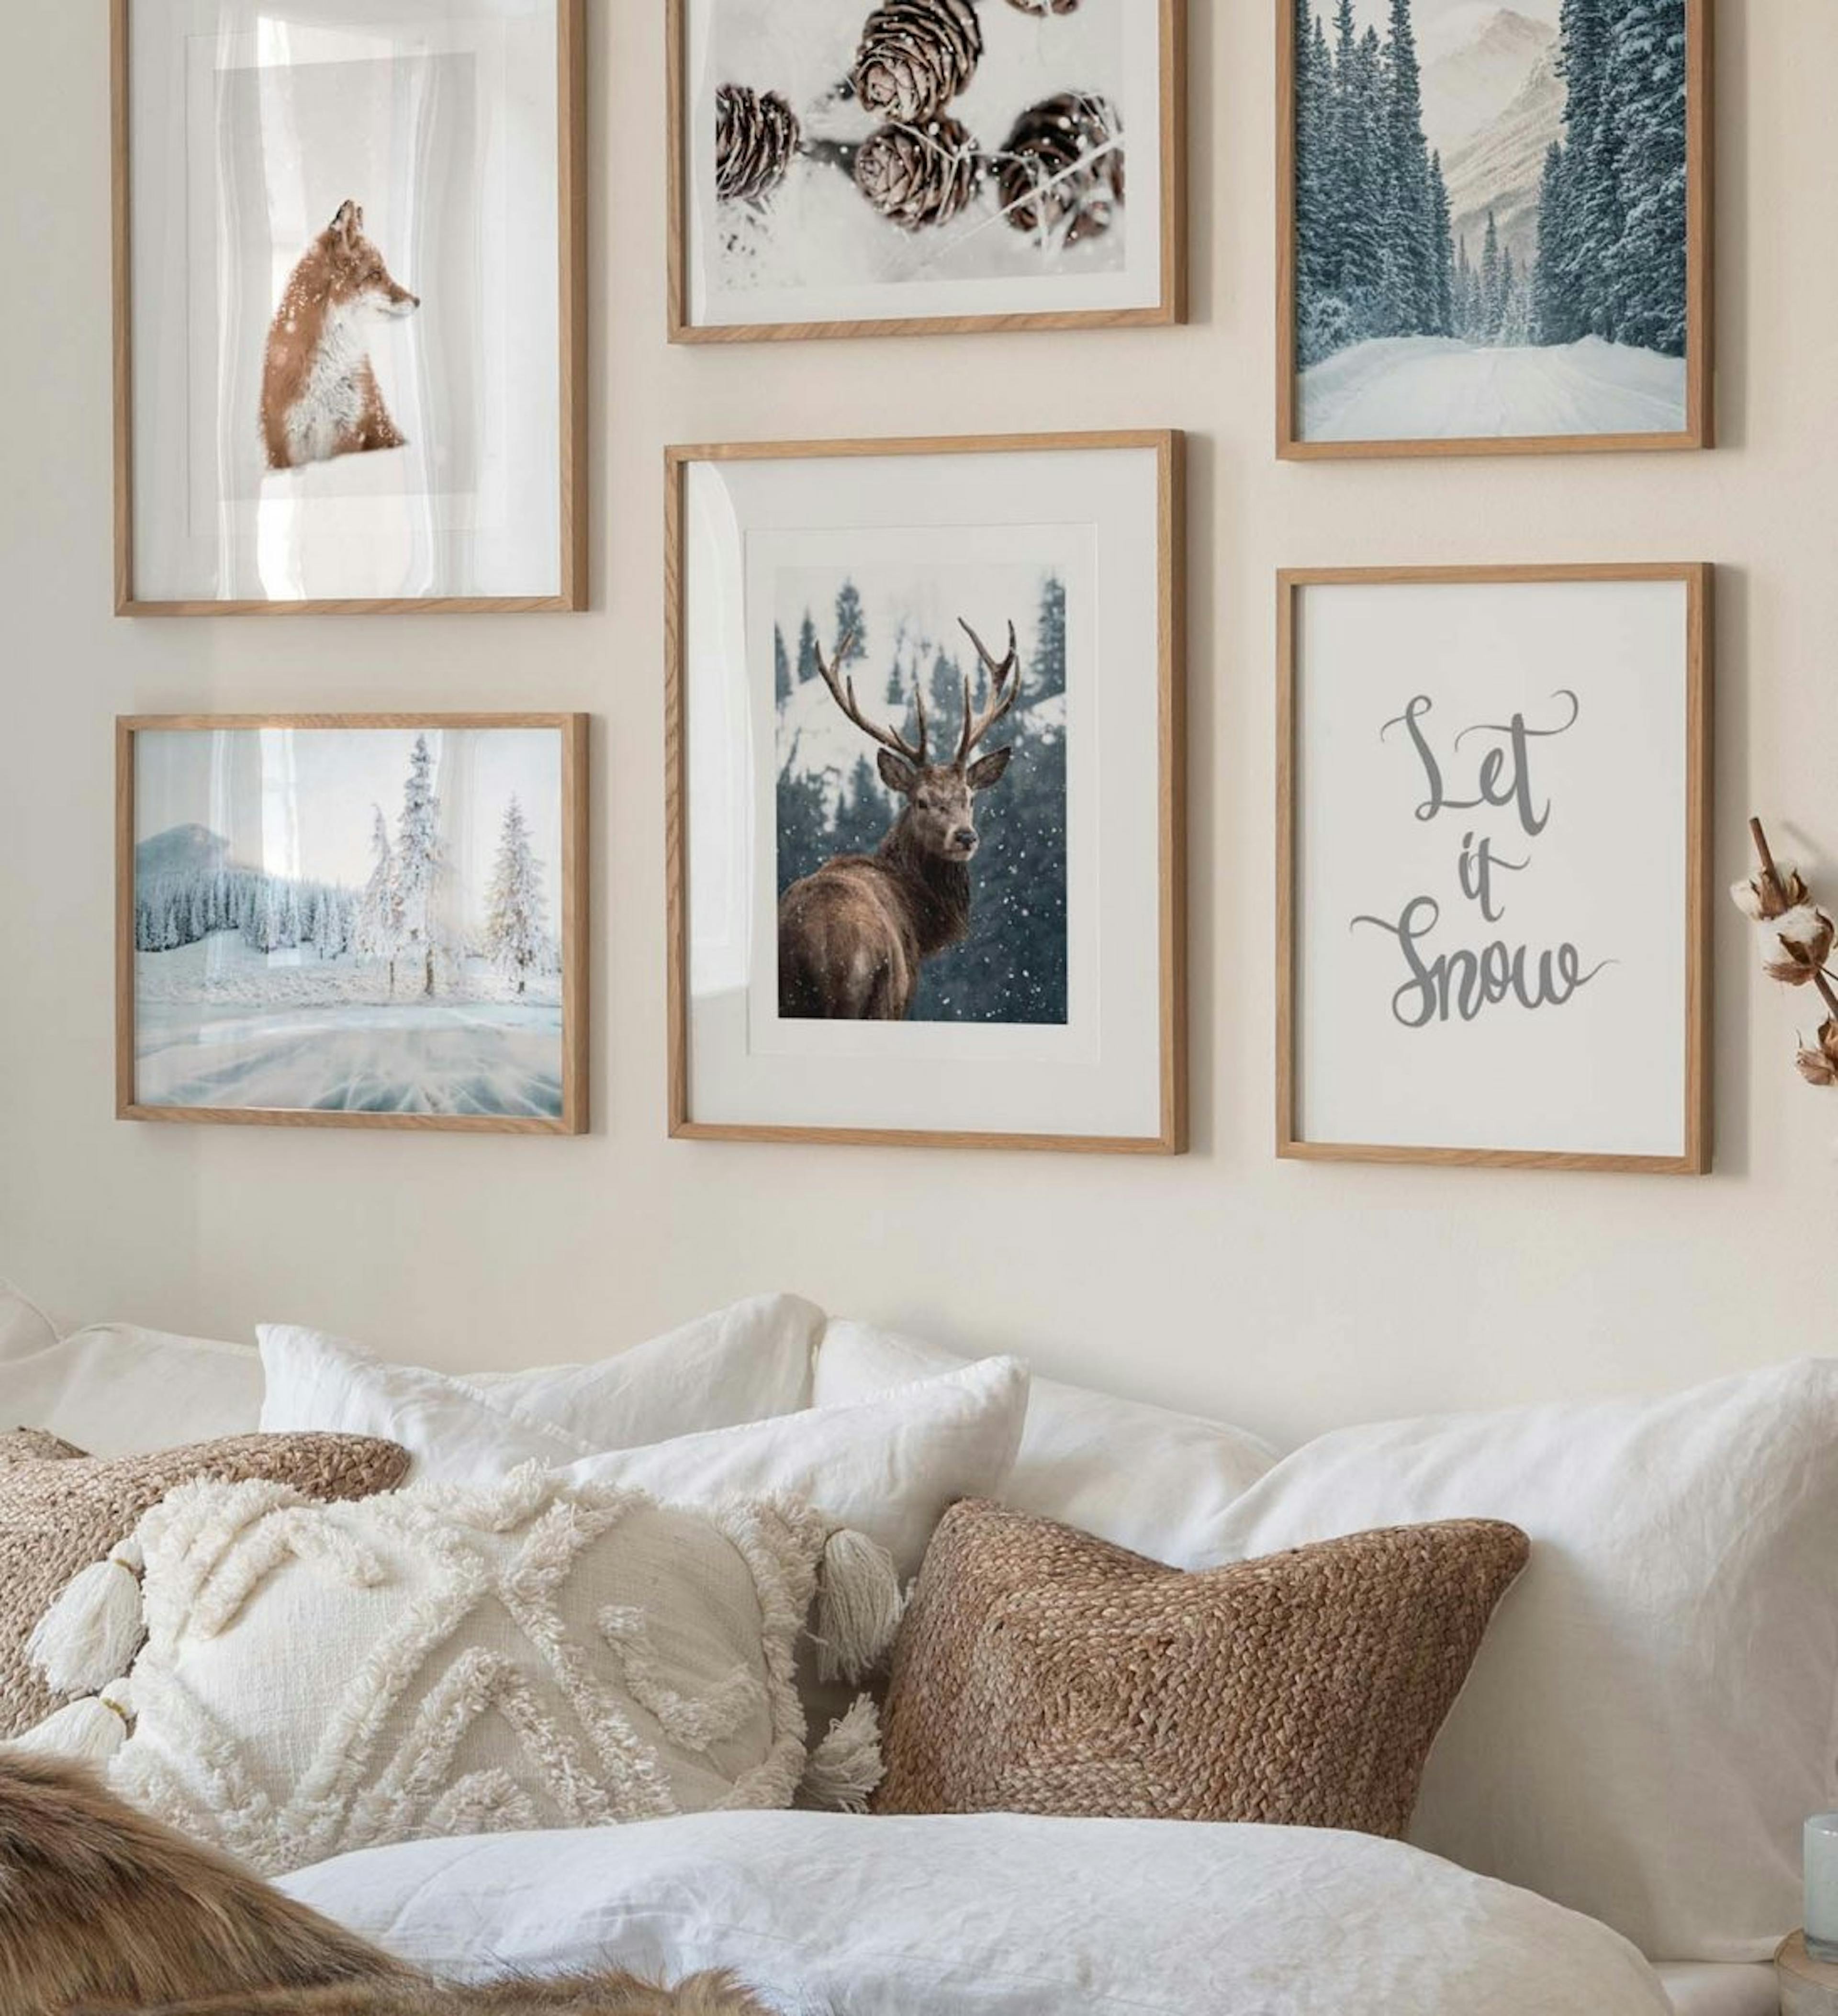 Galerie de perete cu postere de iarnă cu conuri, o vulpe și un cerb roșu combinate cu fotografii de iarnă și printuri de citate 